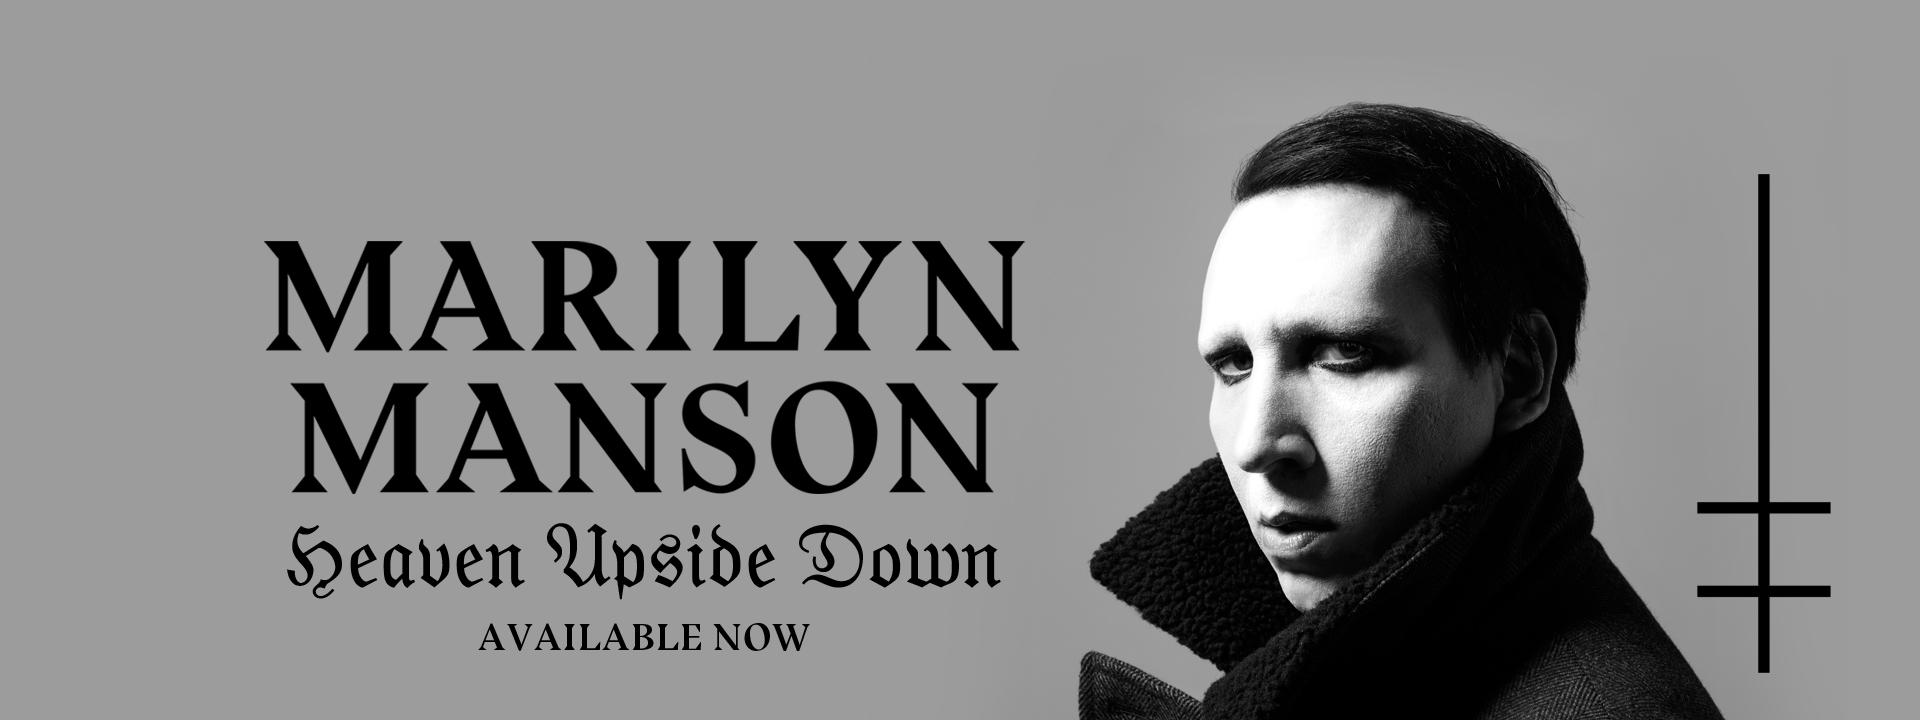 Marilyn Manson Official Logo - MARILYN MANSON - Official WEBSITE